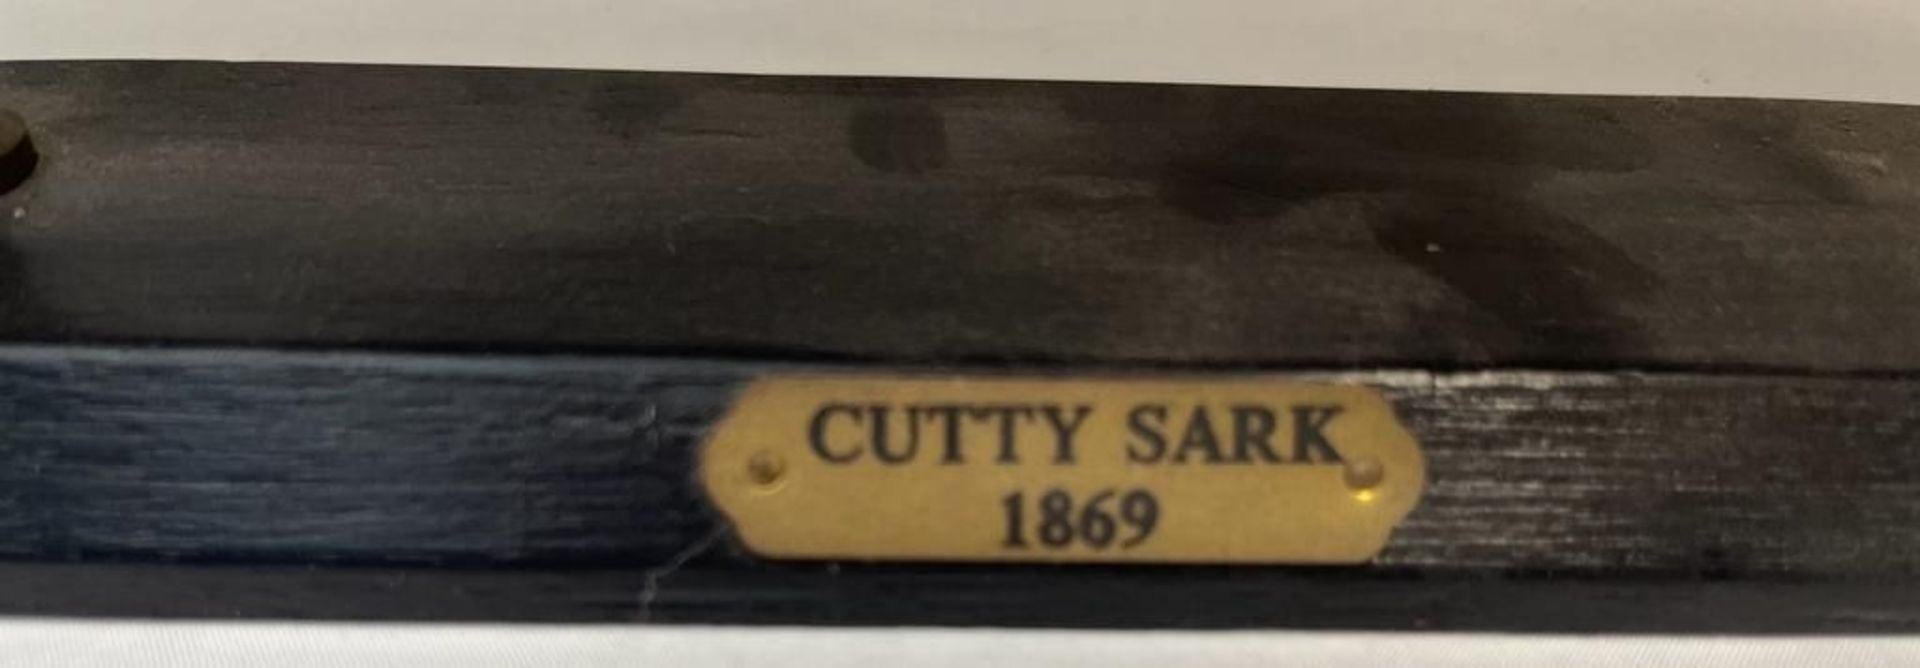 Schiffmodell "Cutty Sark" - Bild 2 aus 3